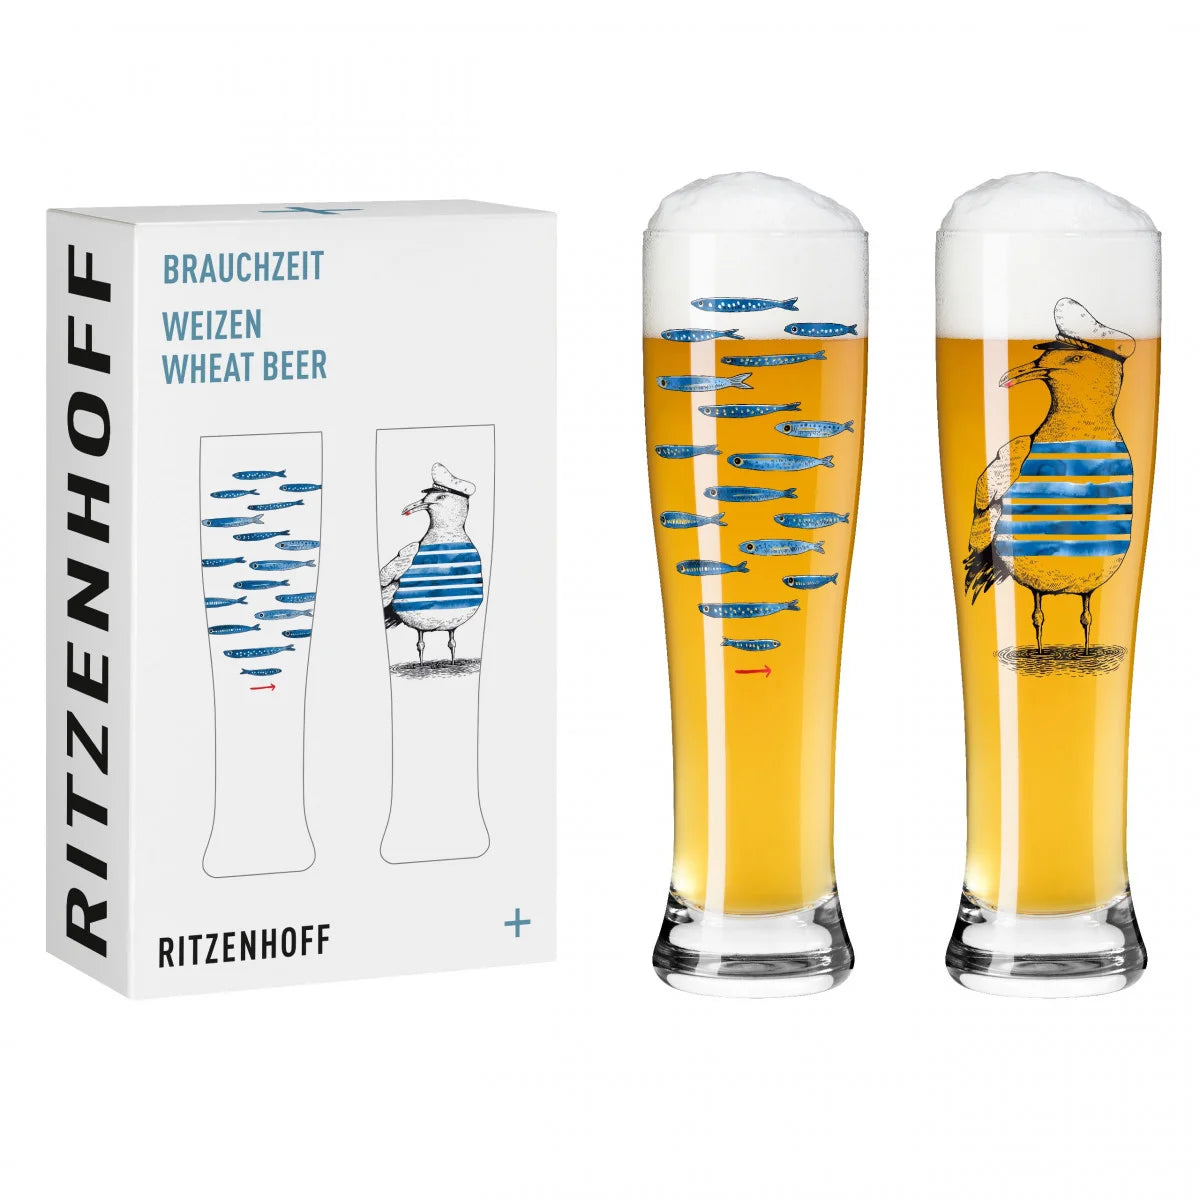 Ritzenhoff Brauchzeit Weizenbierglas 2er-Set #13, #14